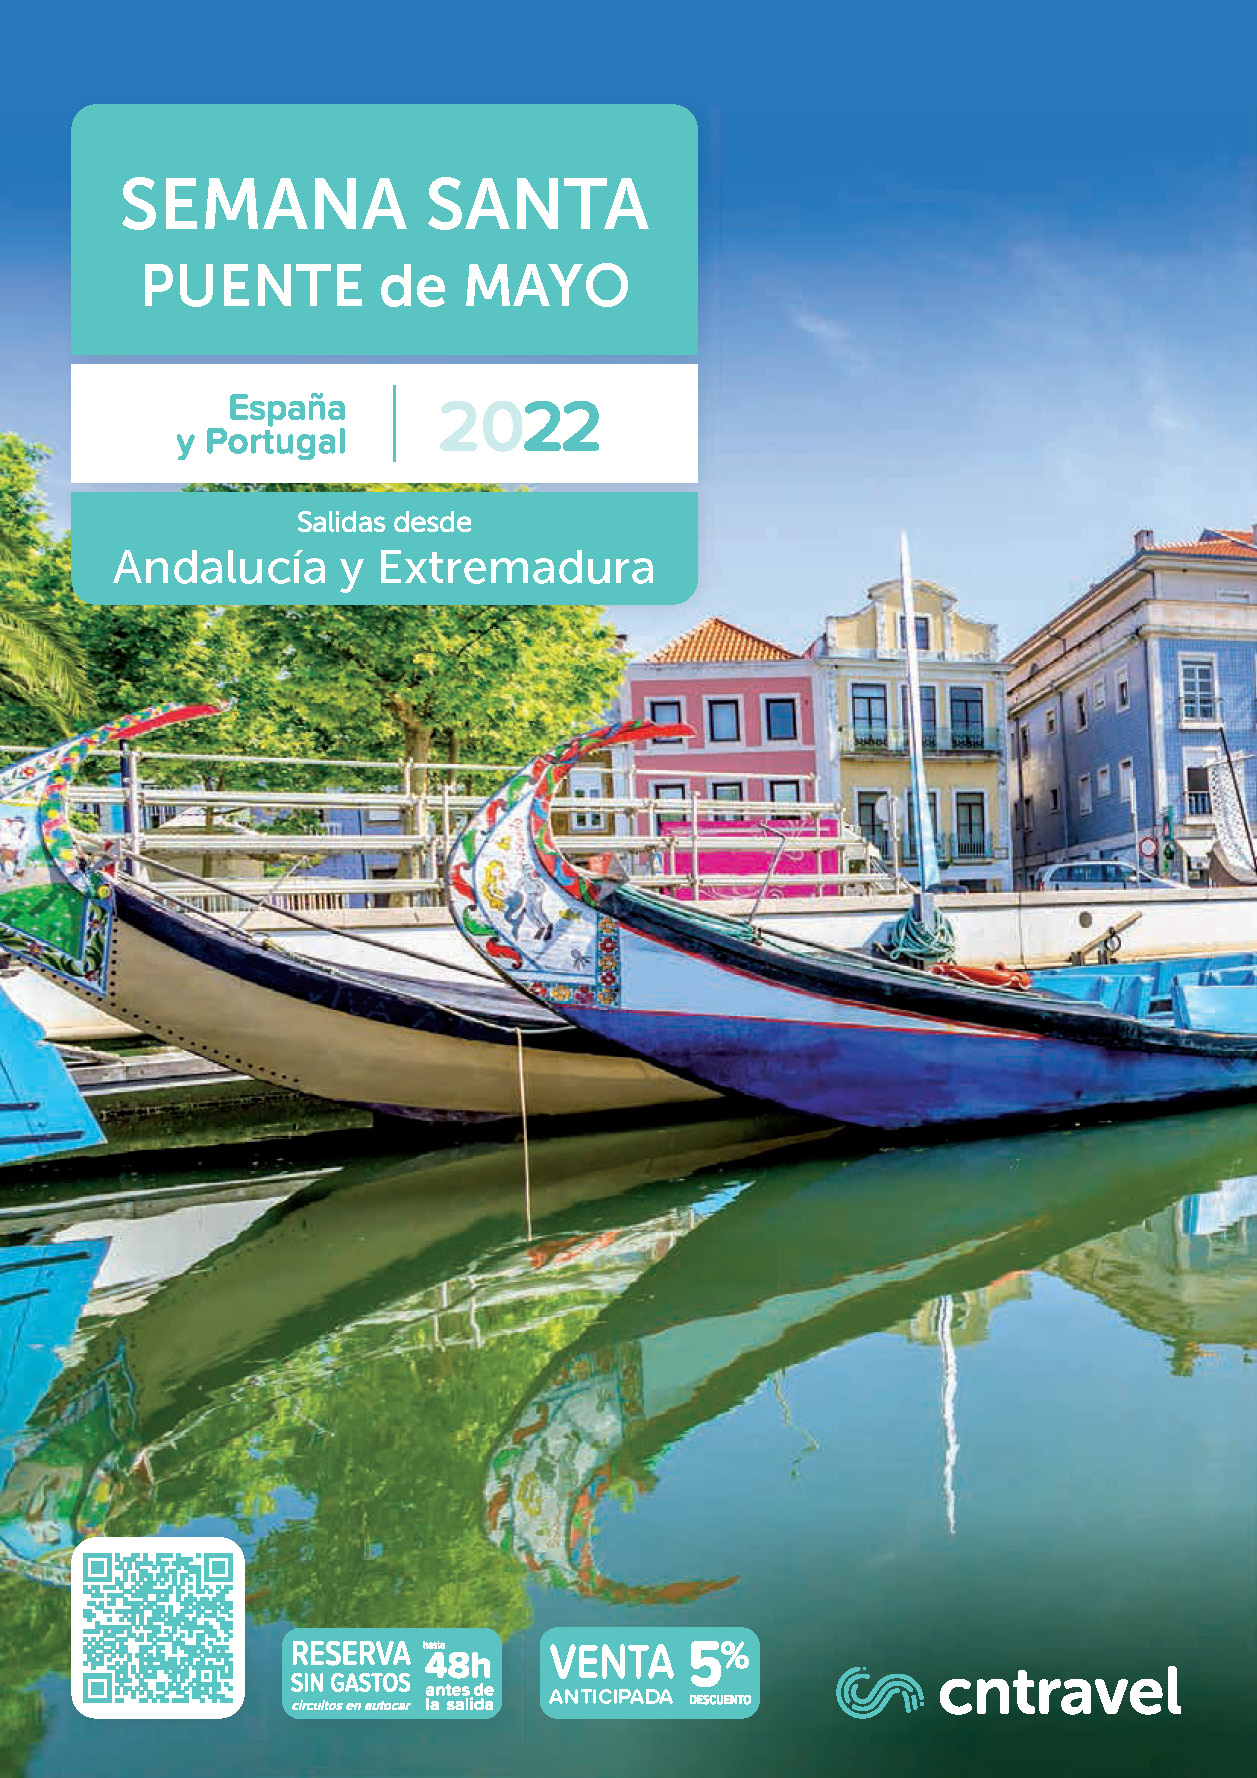 Catalogo CN Travel Semana Santa y Puente de Mayo 2022 Circuitos en tren Espana y Portugal salidas desde Andalucia y Extremadura